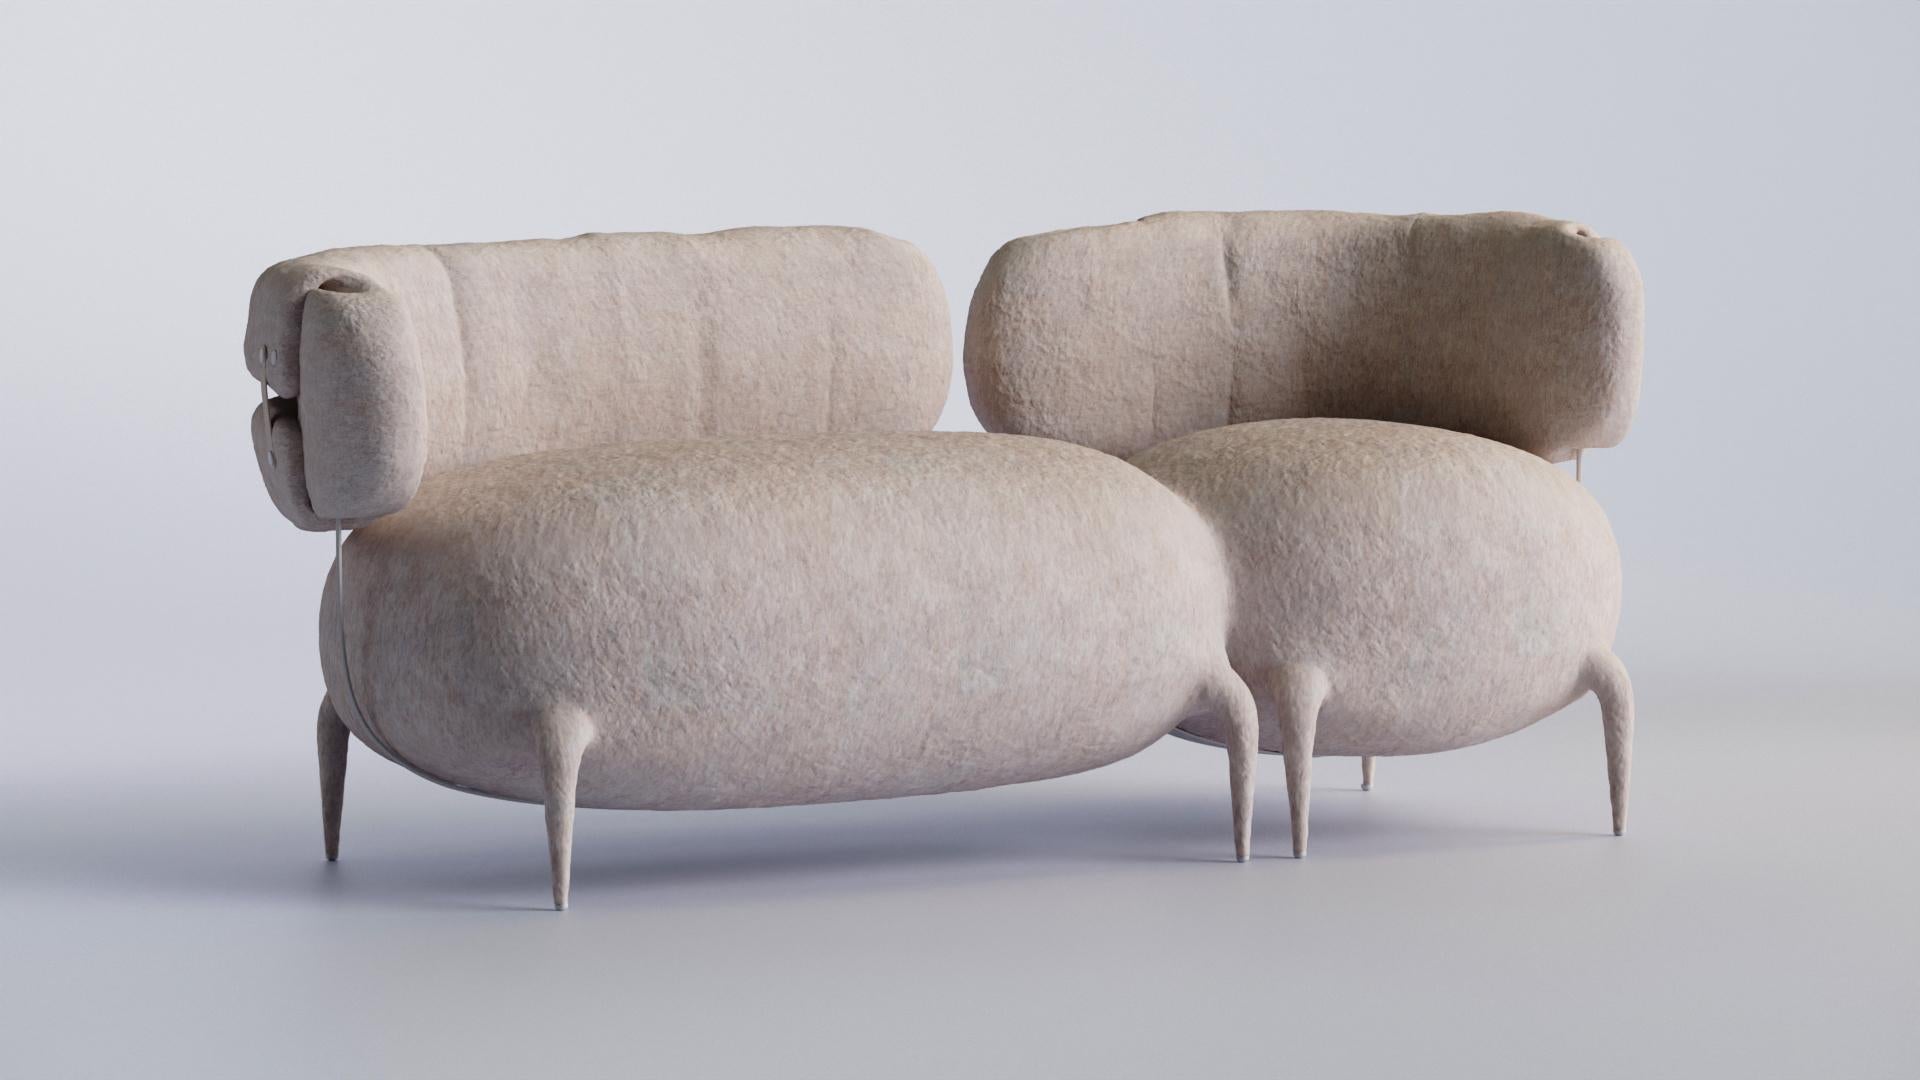 Fabric Lympho Contemporary Sofa by Taras Zheltyshev